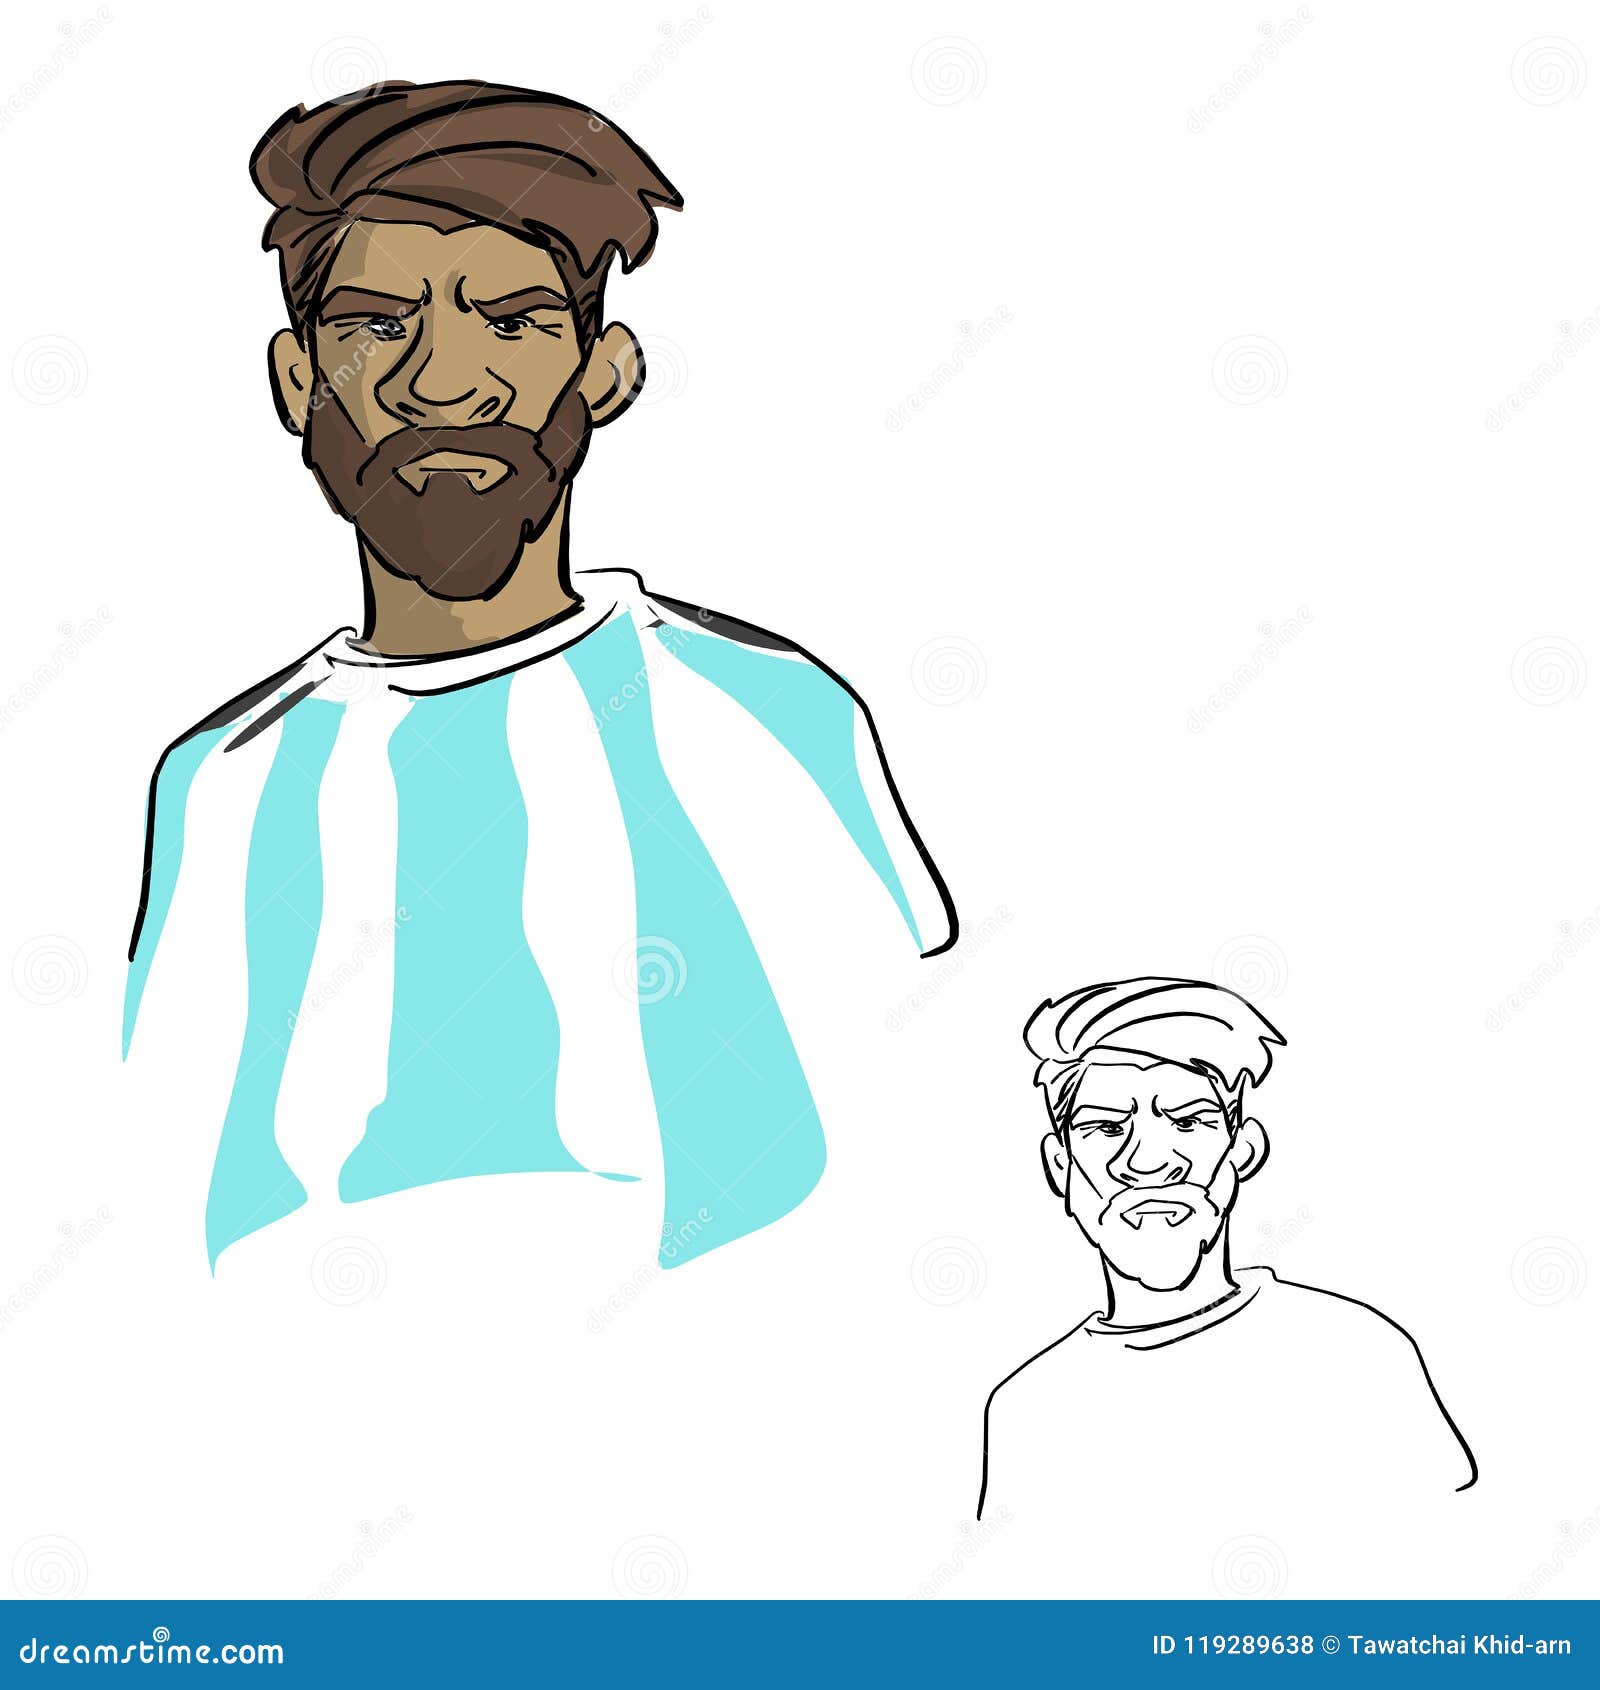 Lionel Messi - Pencil Sketch | Ritratti, Illustration, Fc barcelona